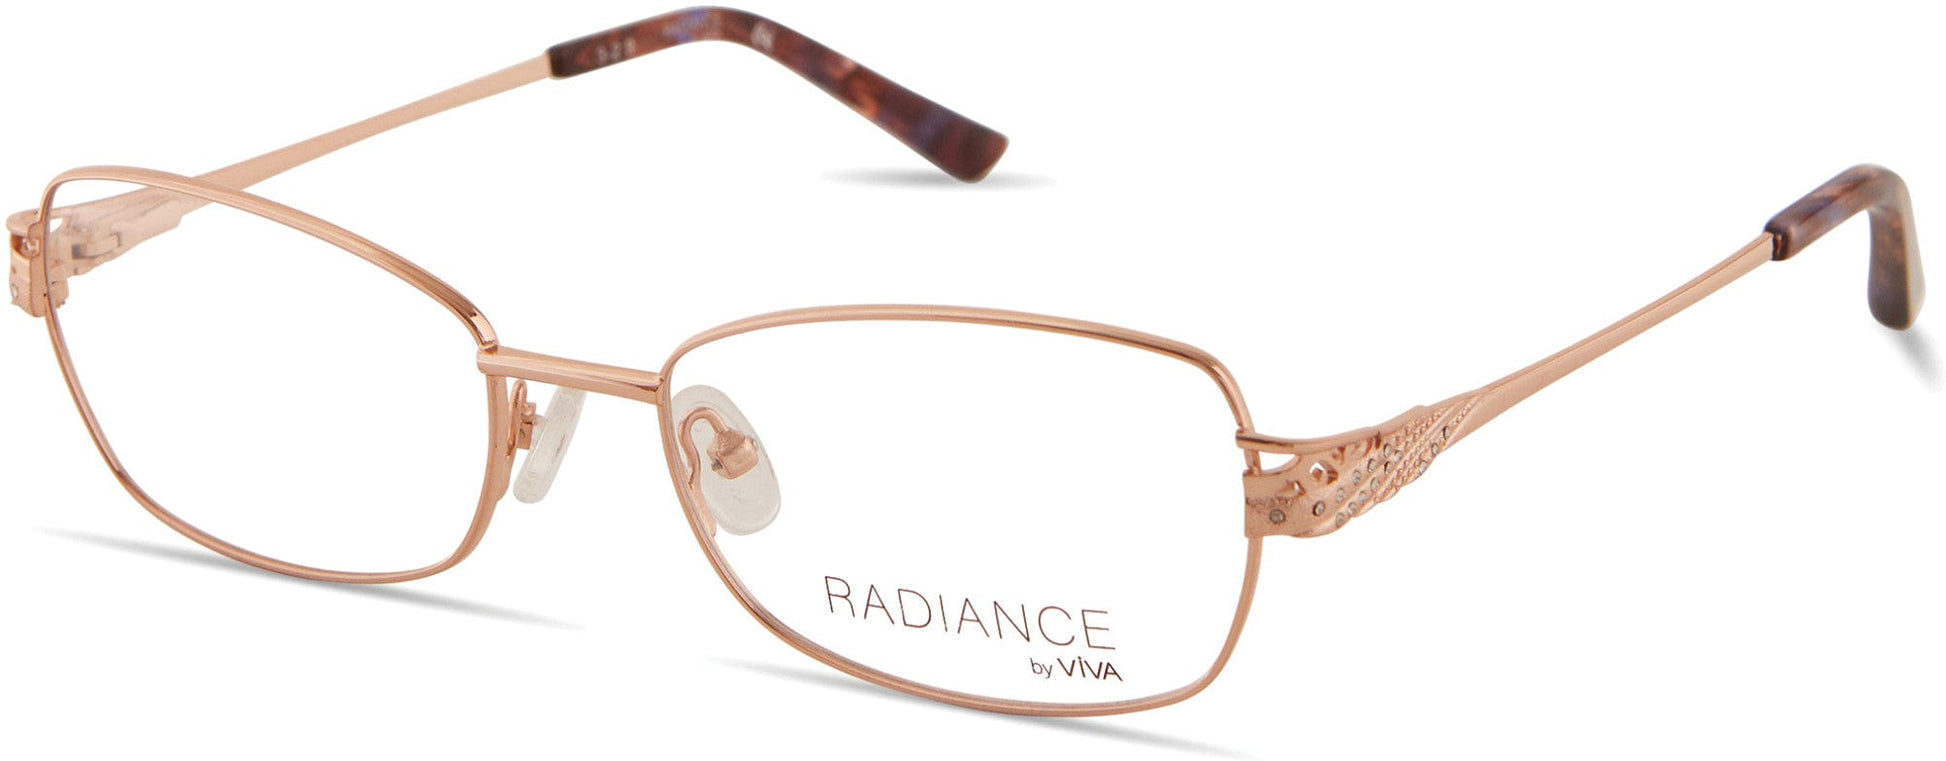 Viva VV8013 Rectangular Eyeglasses 028-028 - Shiny Rose Gold